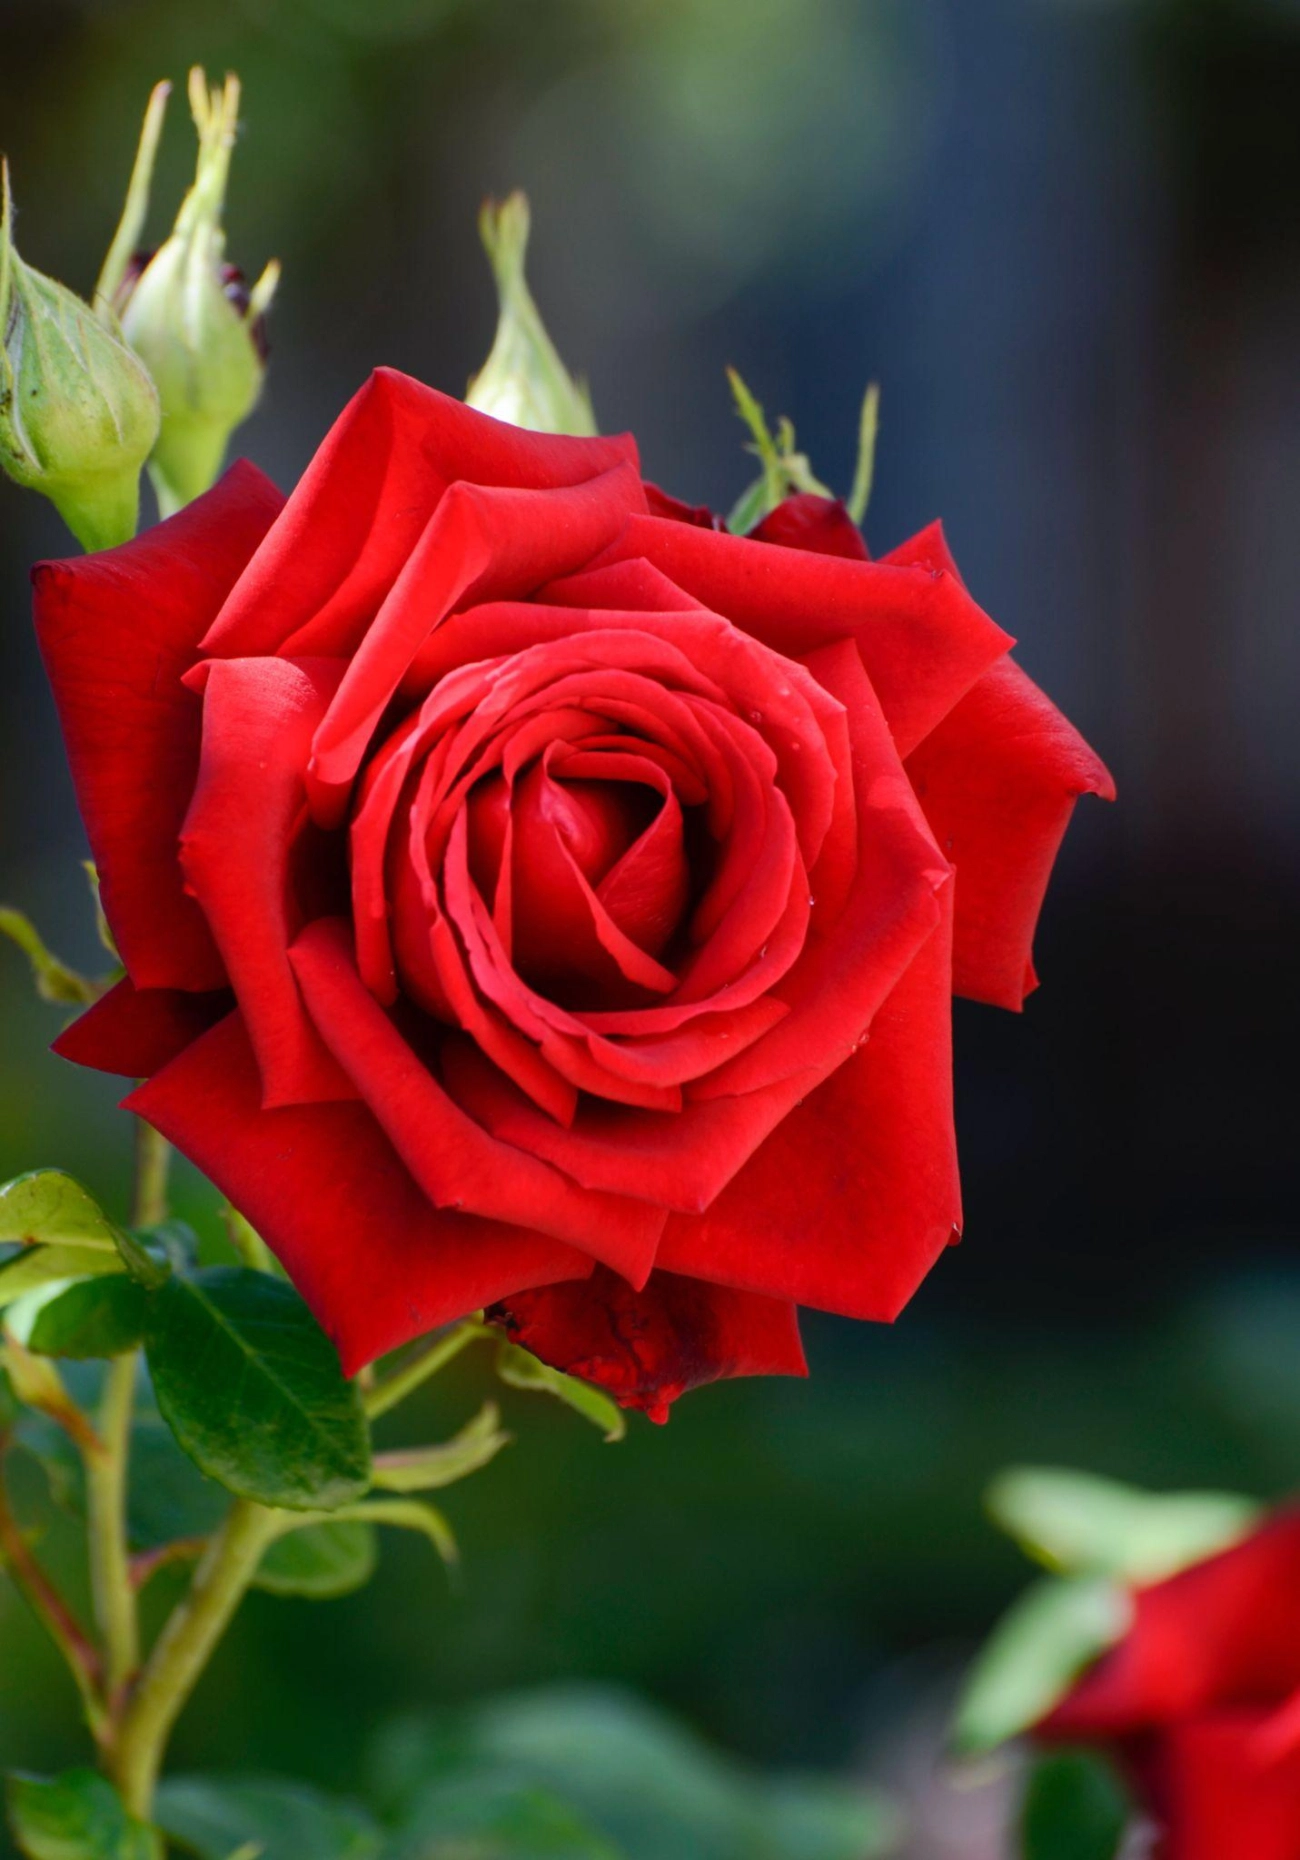 50 hình ảnh hoa hồng đẹp nhất và ý nghĩa theo màu sắc - 41